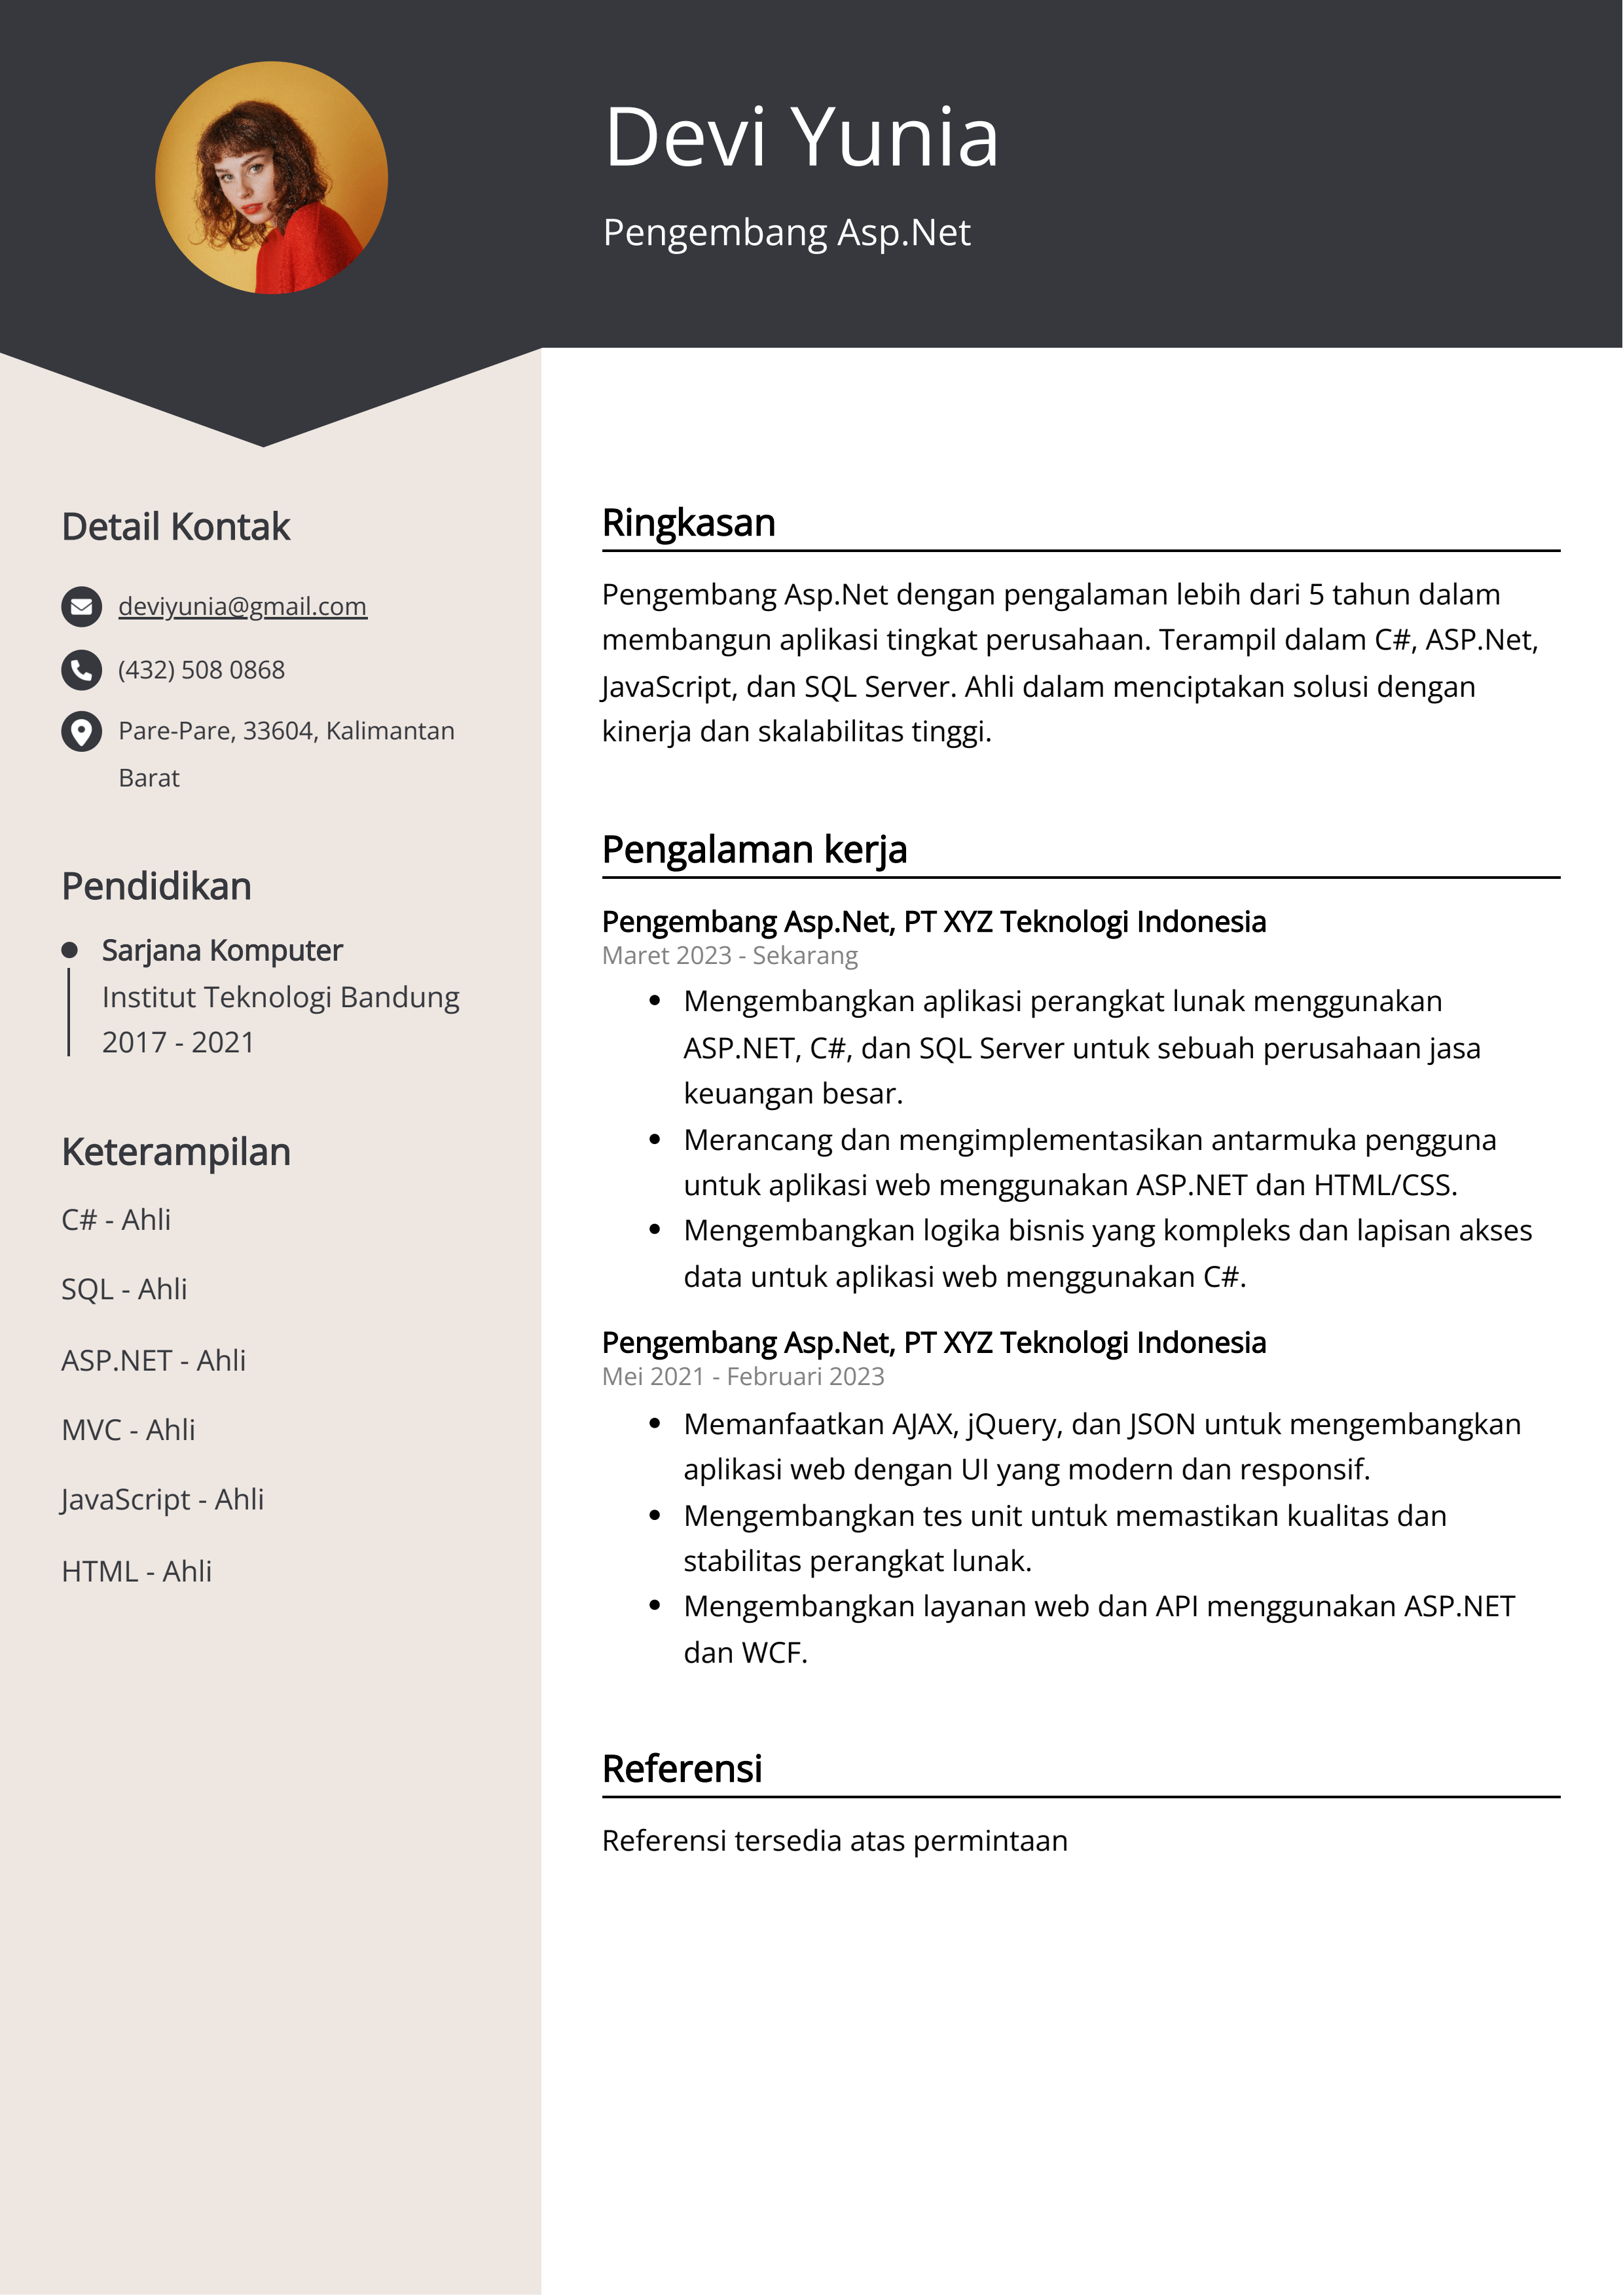 Contoh Resume Pengembang Asp.Net